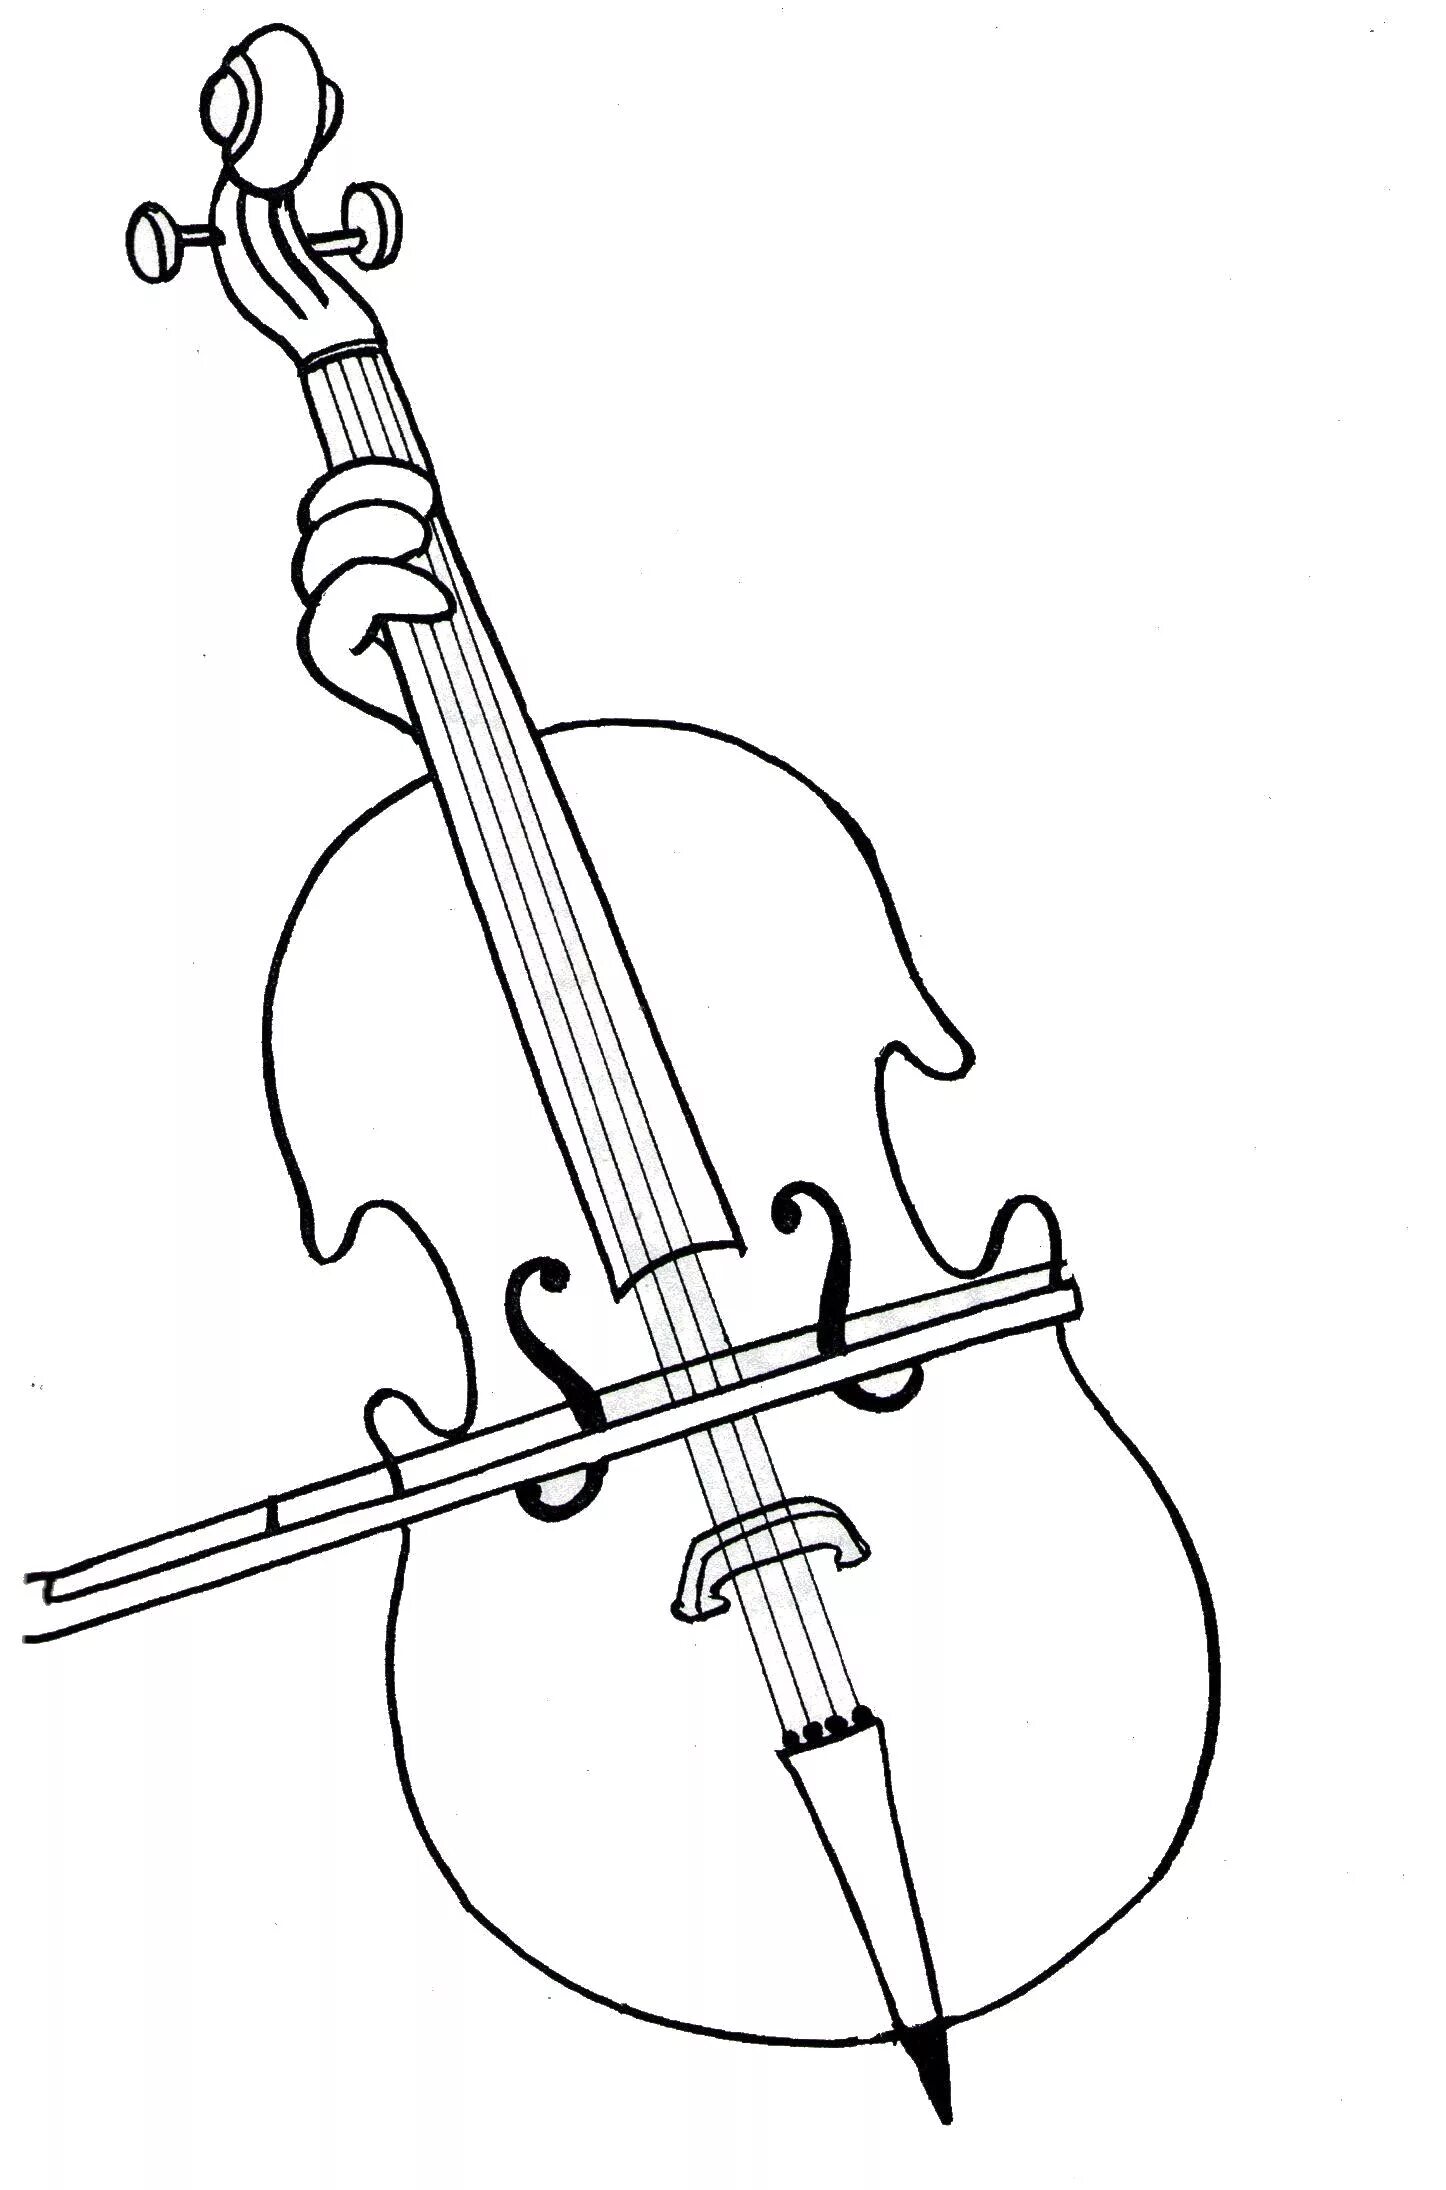 Violin and cello #1